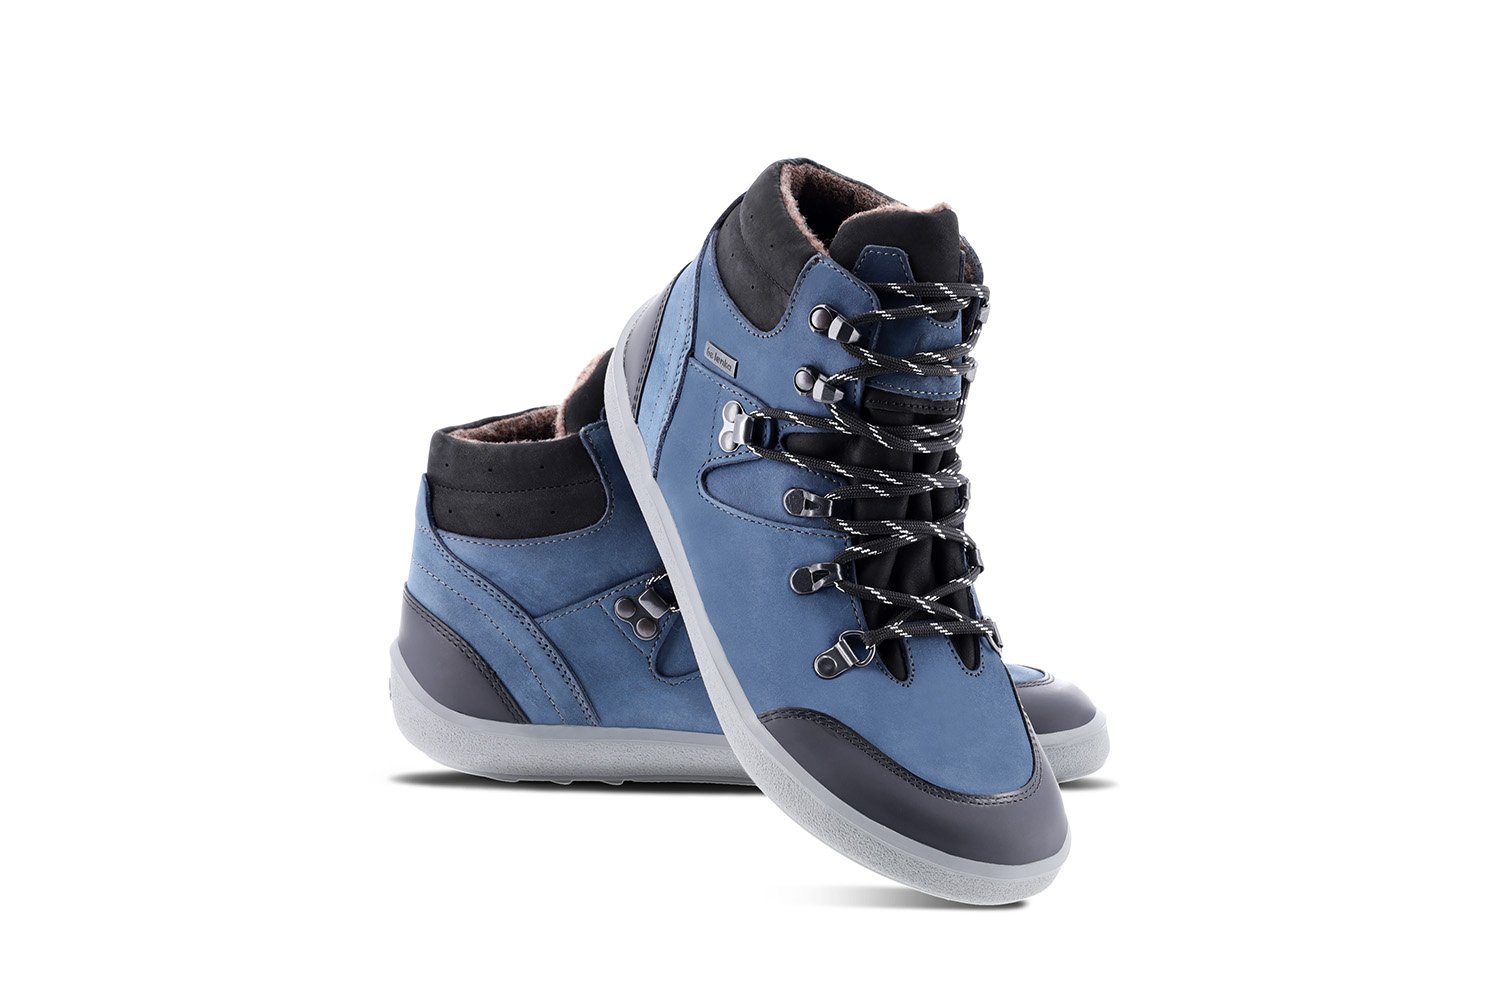 Barefoot Shoes Be Lenka 2.0 - Dark Blue Be Lenka